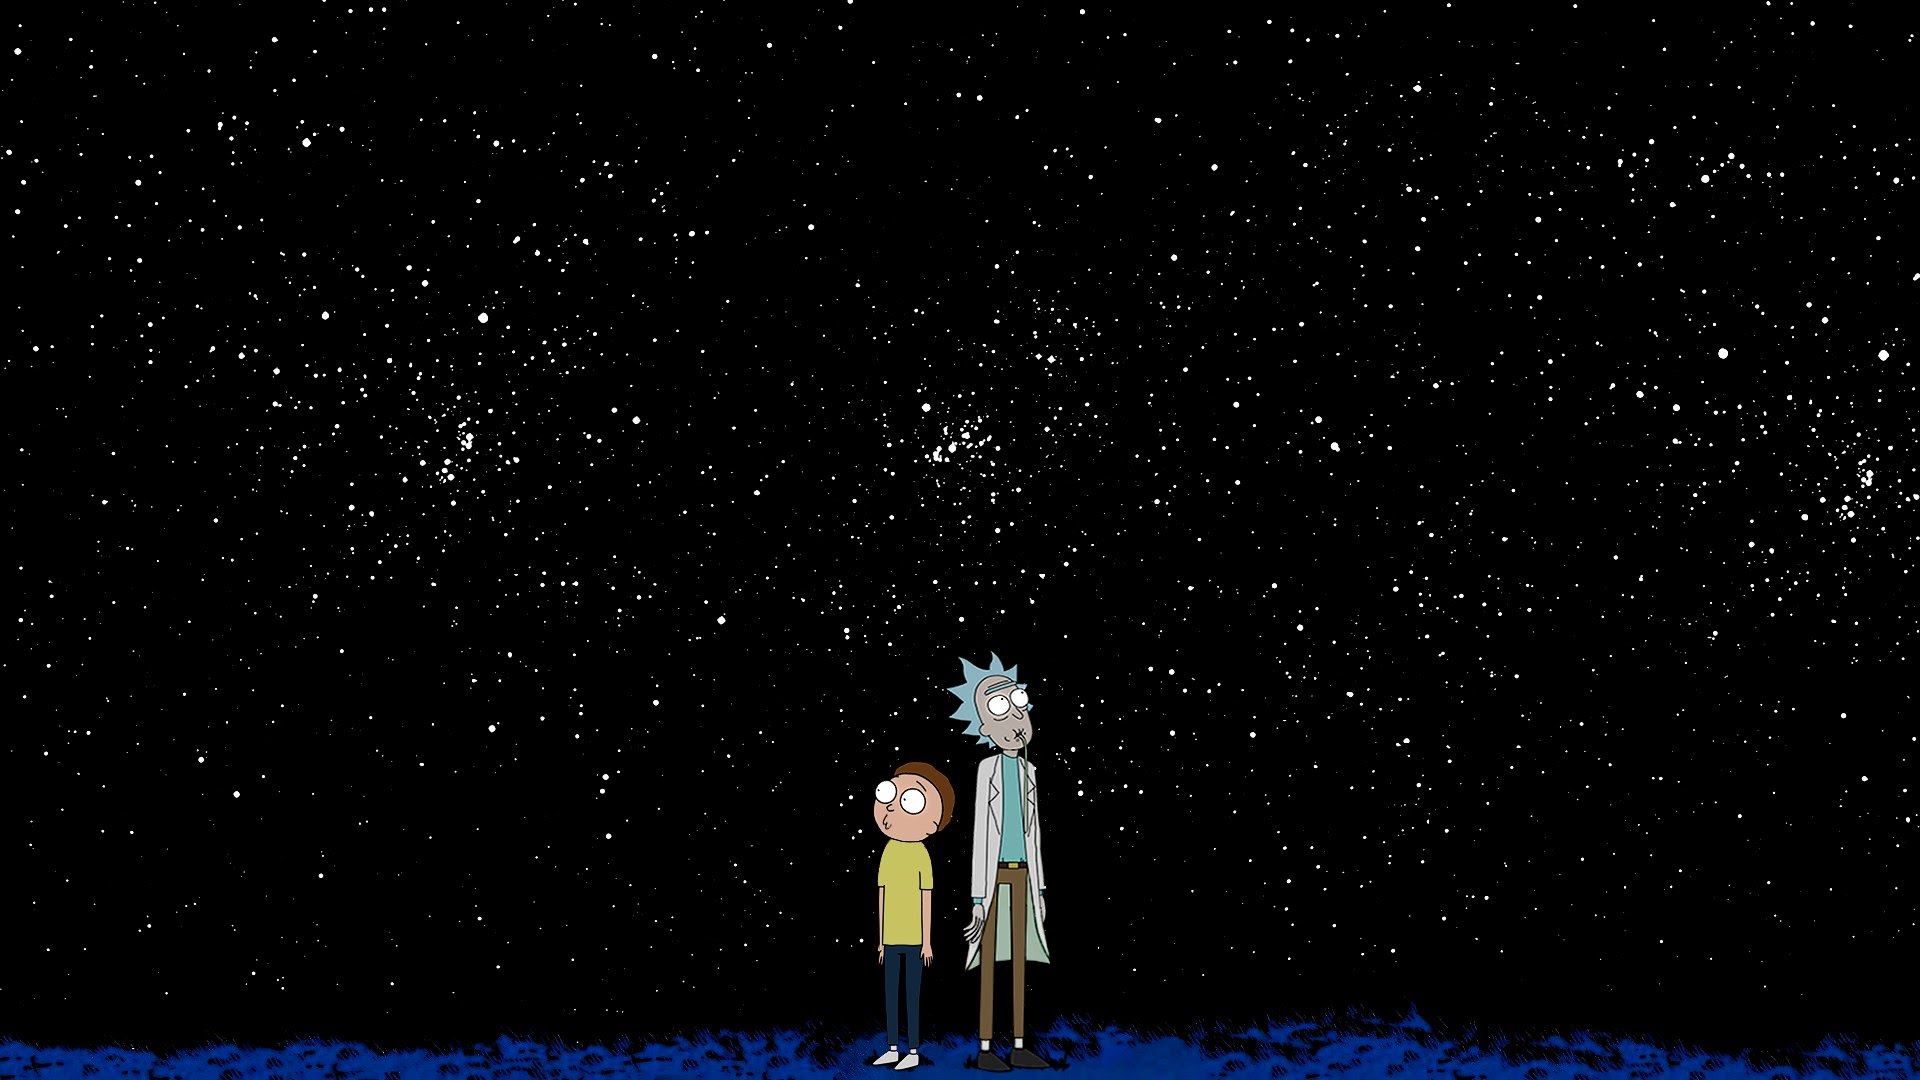 Hình nền Rick và Morty chất lượng cao sẽ đem đến cho bạn trải nghiệm tuyệt vời thông qua độ chi tiết và màu sắc sống động. Dành cho những fan của bộ phim hoạt hình kinh điển này, được tải về để trang trí máy tính của bạn.